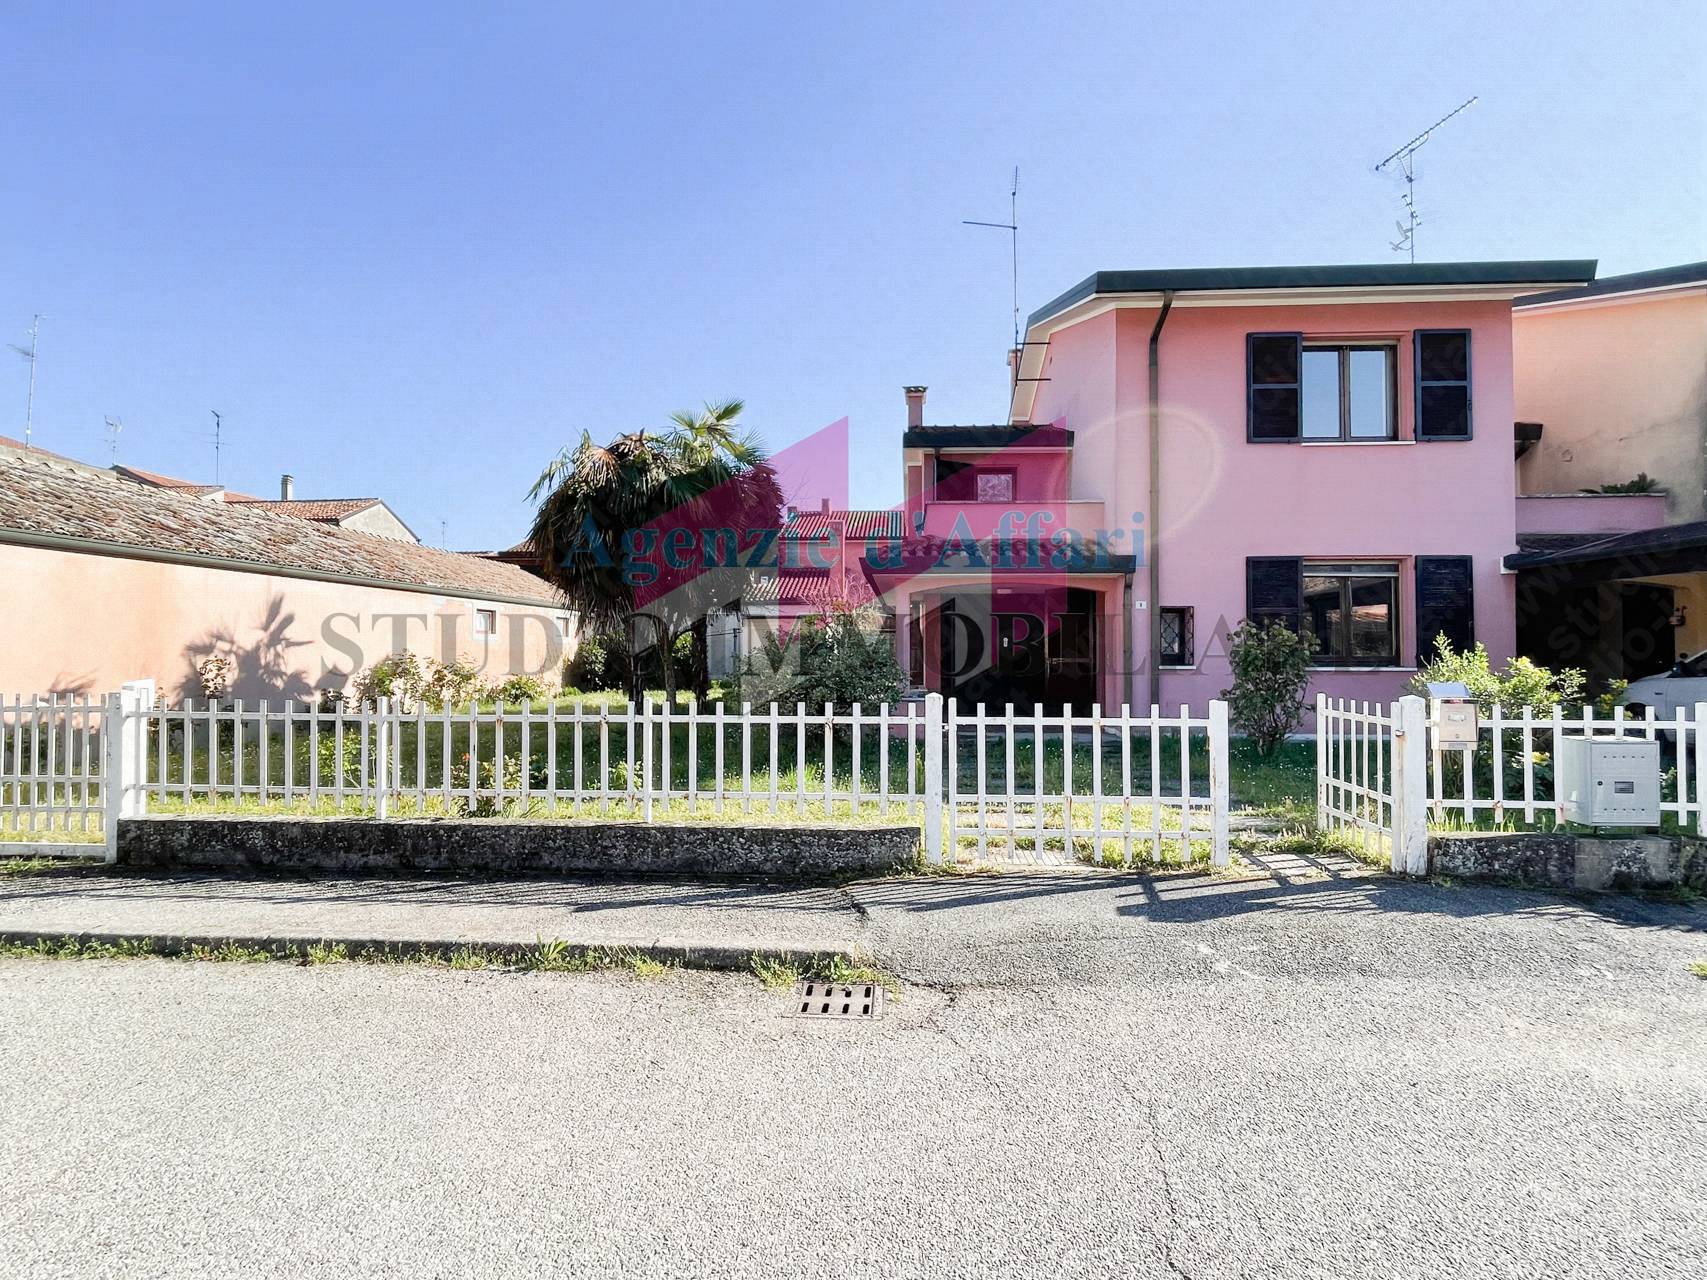 Villa a Schiera in vendita a Castelmassa, 5 locali, prezzo € 135.000 | PortaleAgenzieImmobiliari.it